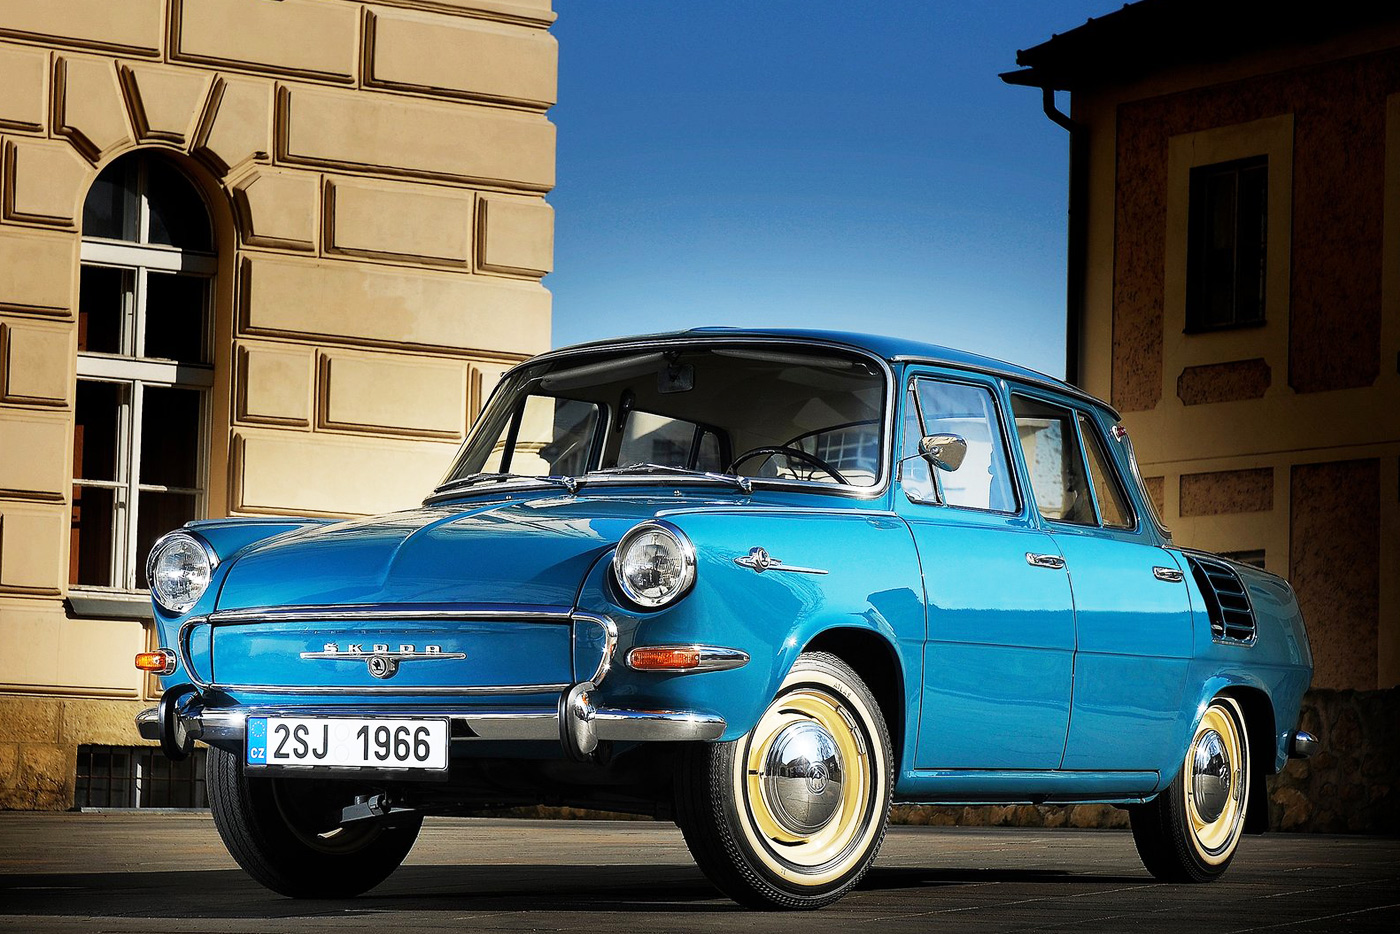 Чехословацкая сенсация 1964 года — Škoda 1000 MB. Силовой агрегат у этой модели находится сзади, а багажник — спереди. Чтобы компенсировать «перевес» и догрузить передние колеса, запаску расположили спереди, под полом багажника